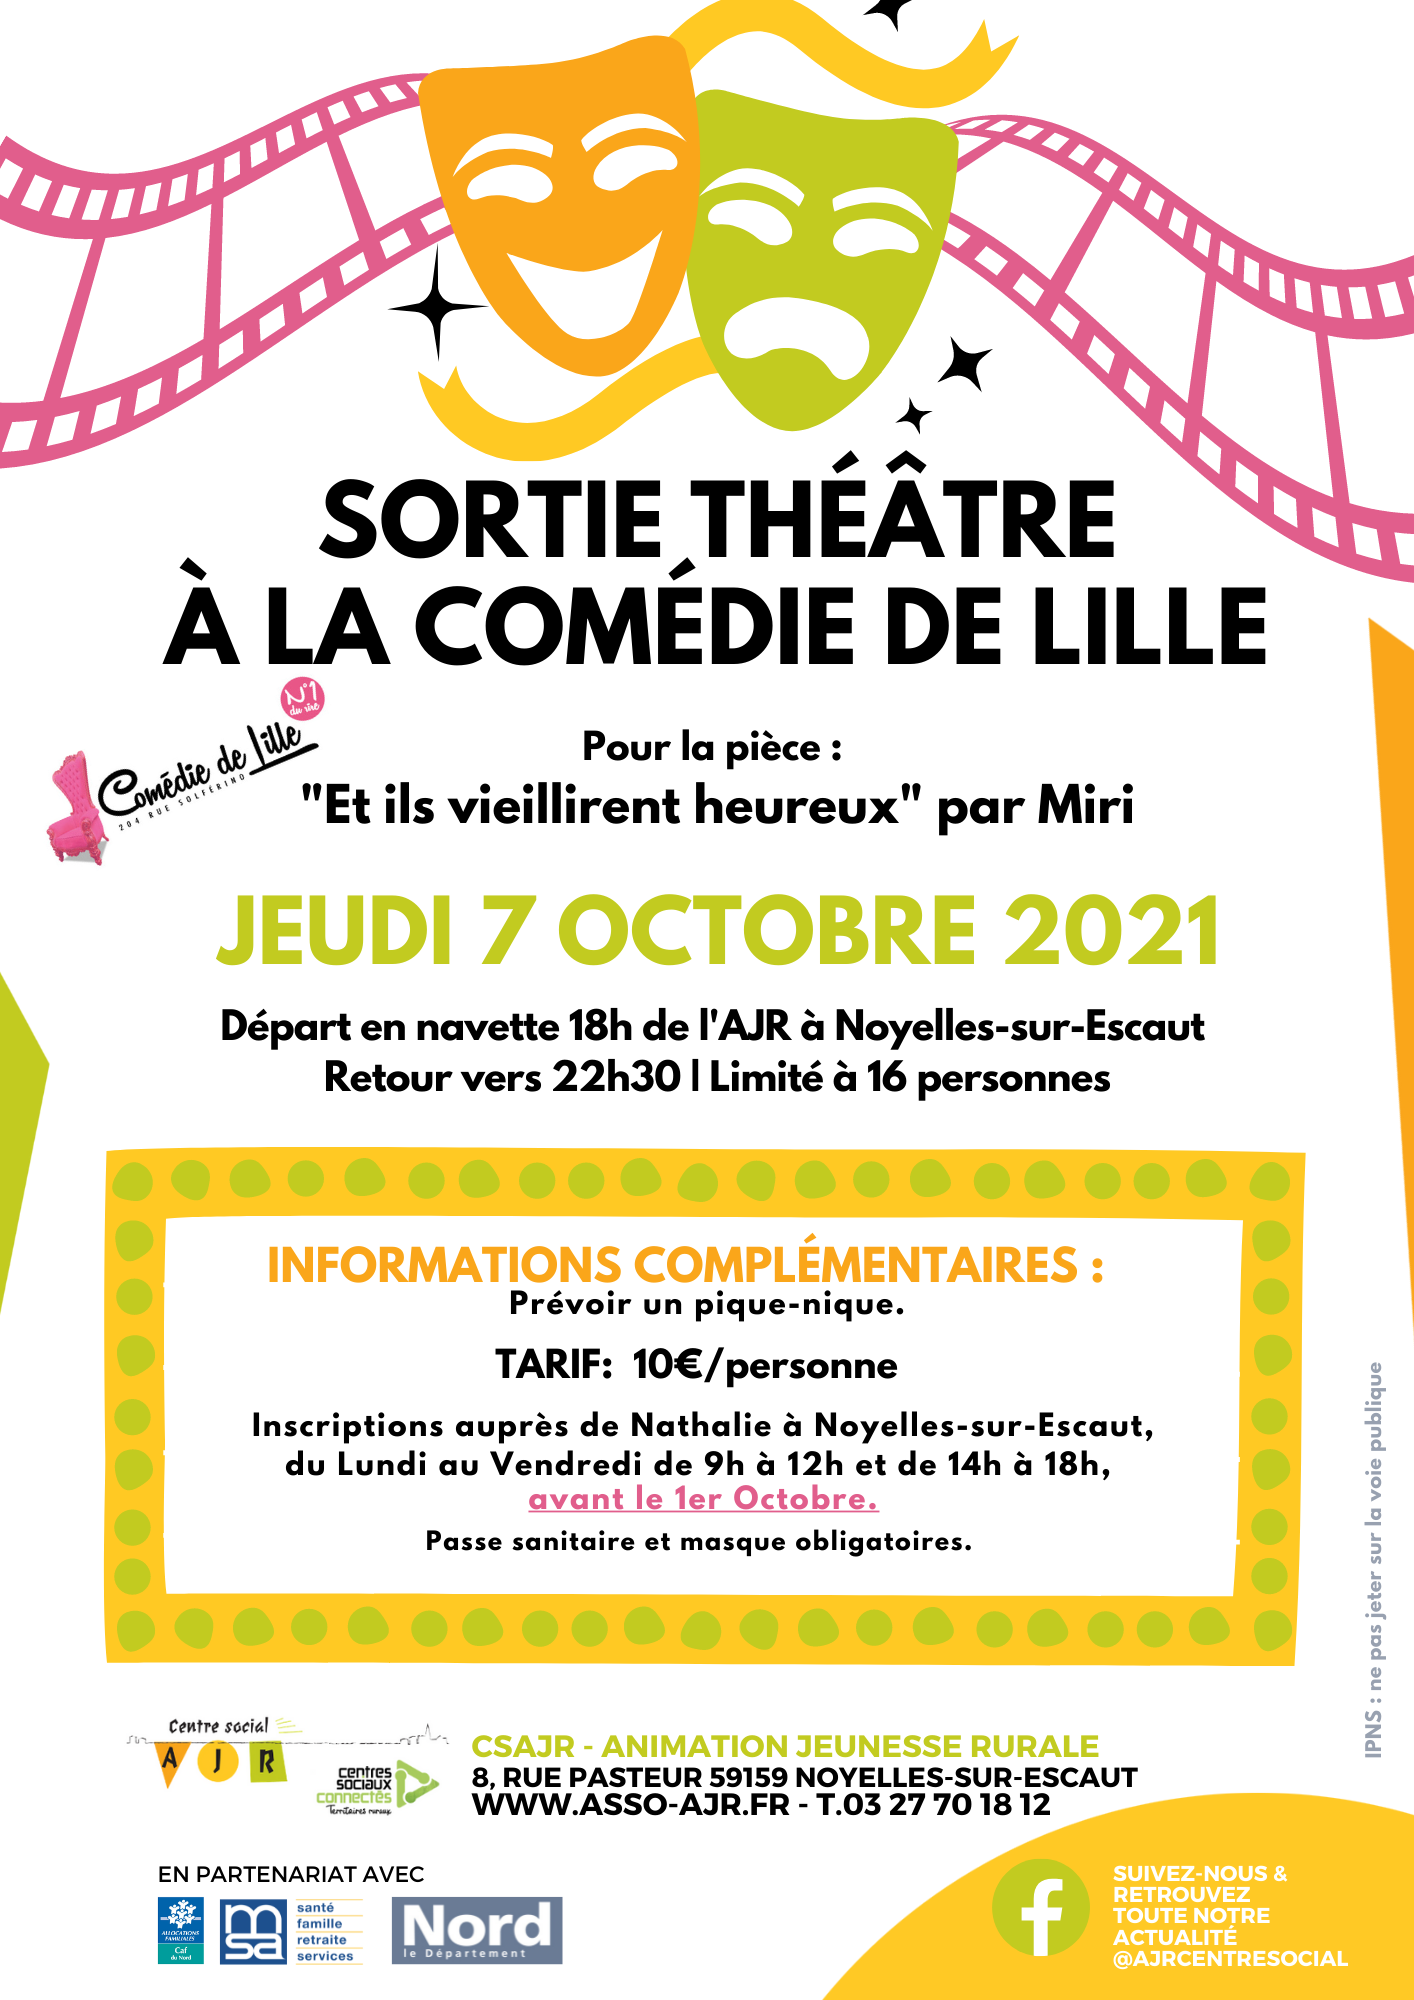 Sortie théâtre Lille 7 octobre 2021 (1)